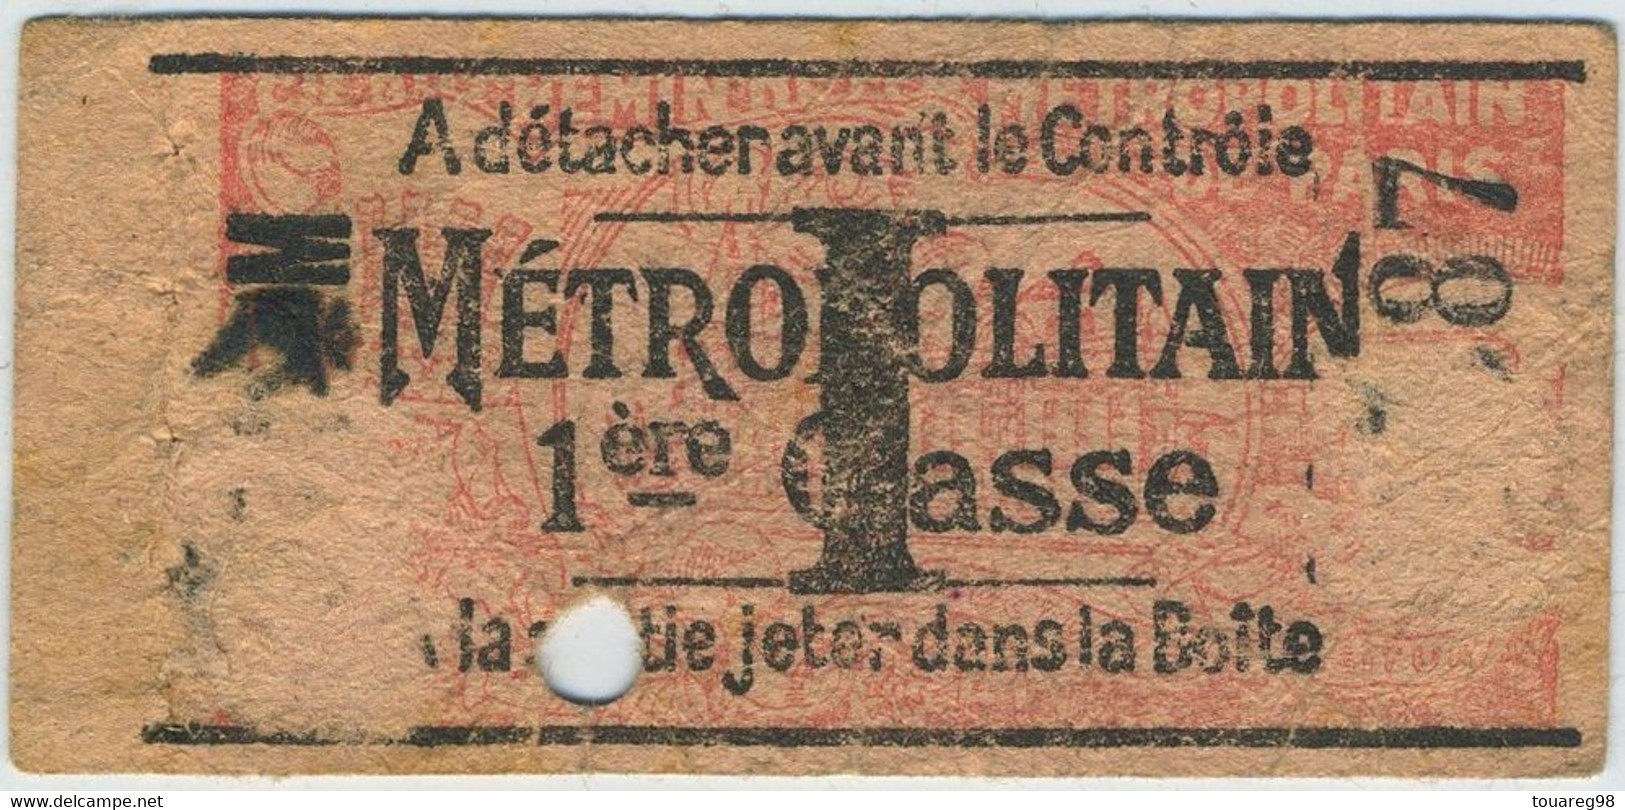 Paris. Métropolitain. Ticket De Métro I 1re Classe. - Europa